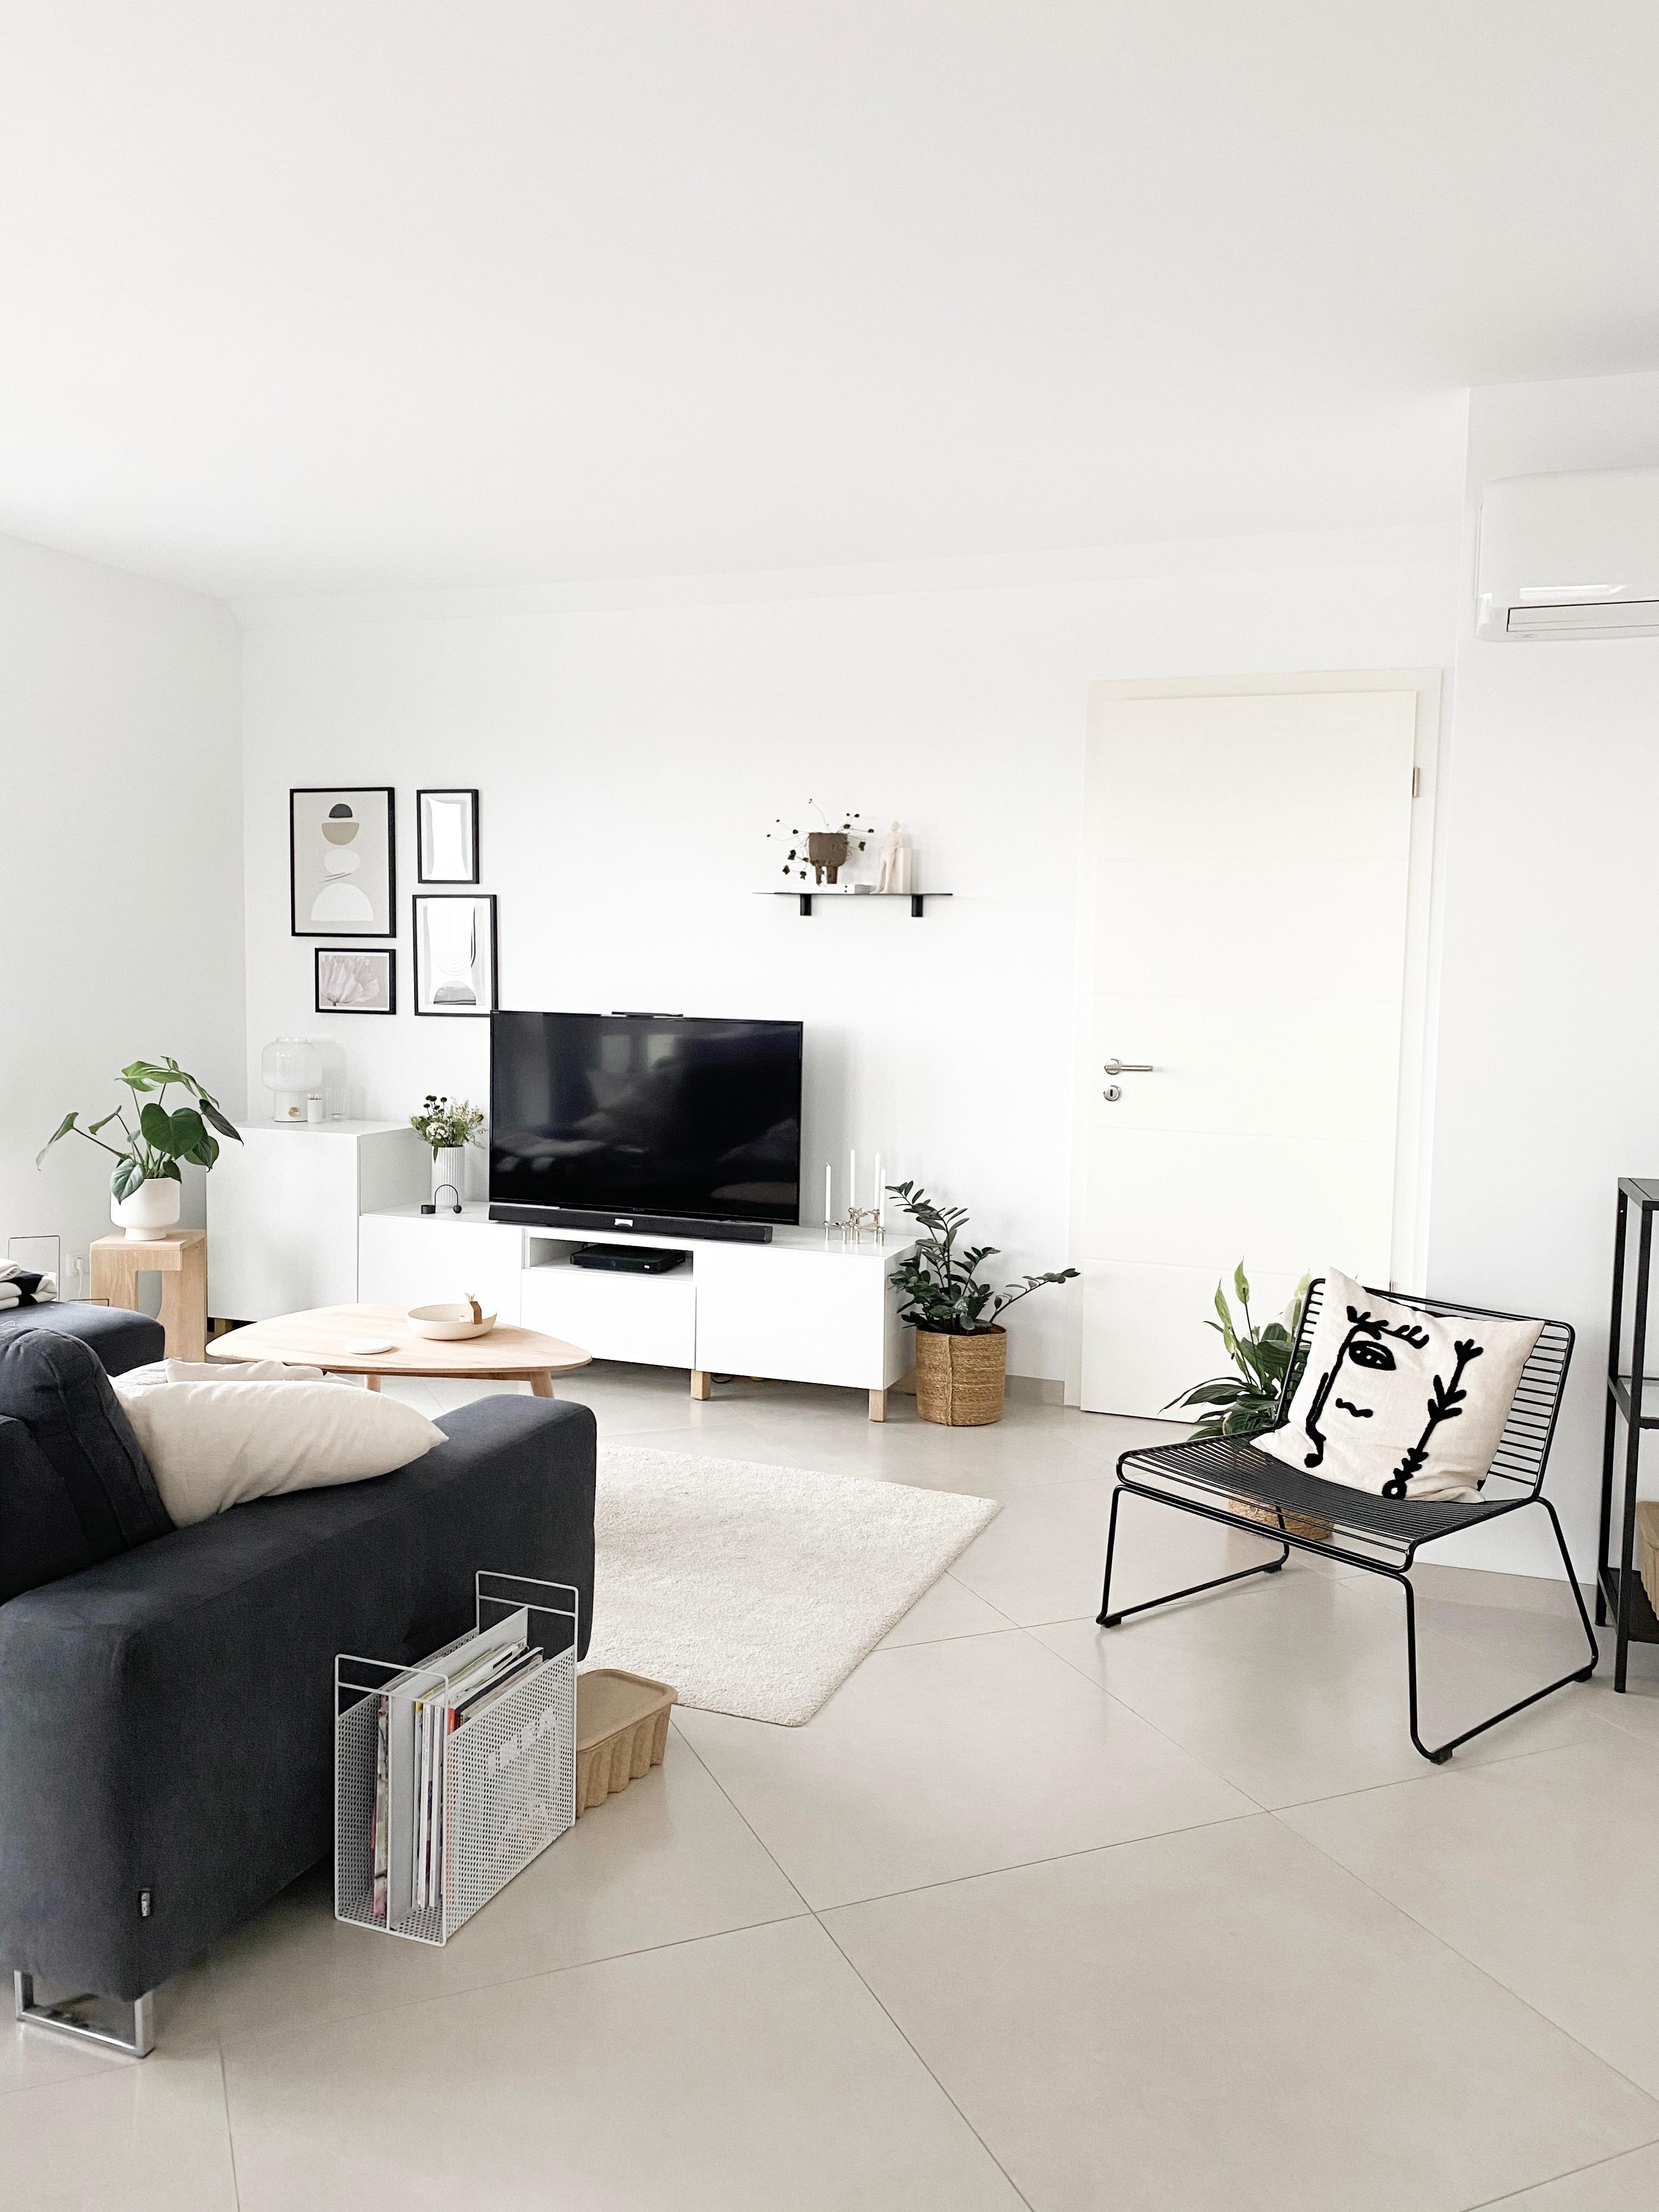 Hej aus unserem Wohnzimmer: unaufgeregt, leise Farben und skandinavisch. #wohnzimmer #livingchallenge